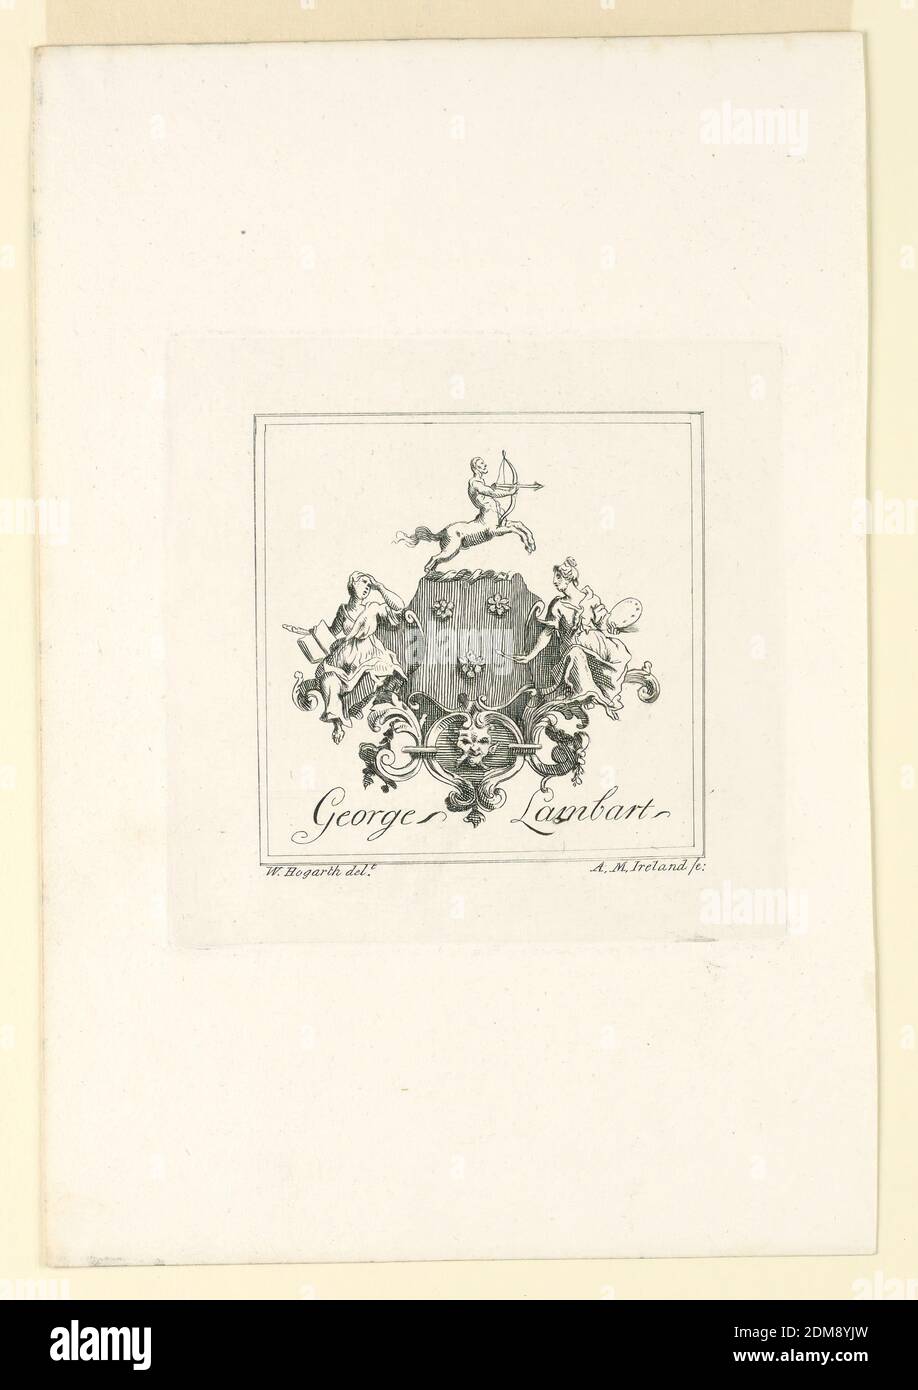 George Lambart's Book Plate, A.M. Ireland, William Hogarth, Englisch, 1697 - 1764, Radierung auf Papier, das Exlibris zeigt das Wappen von George Lambart mit der Inschrift des Namens darunter., England, 1794, Print Stockfoto